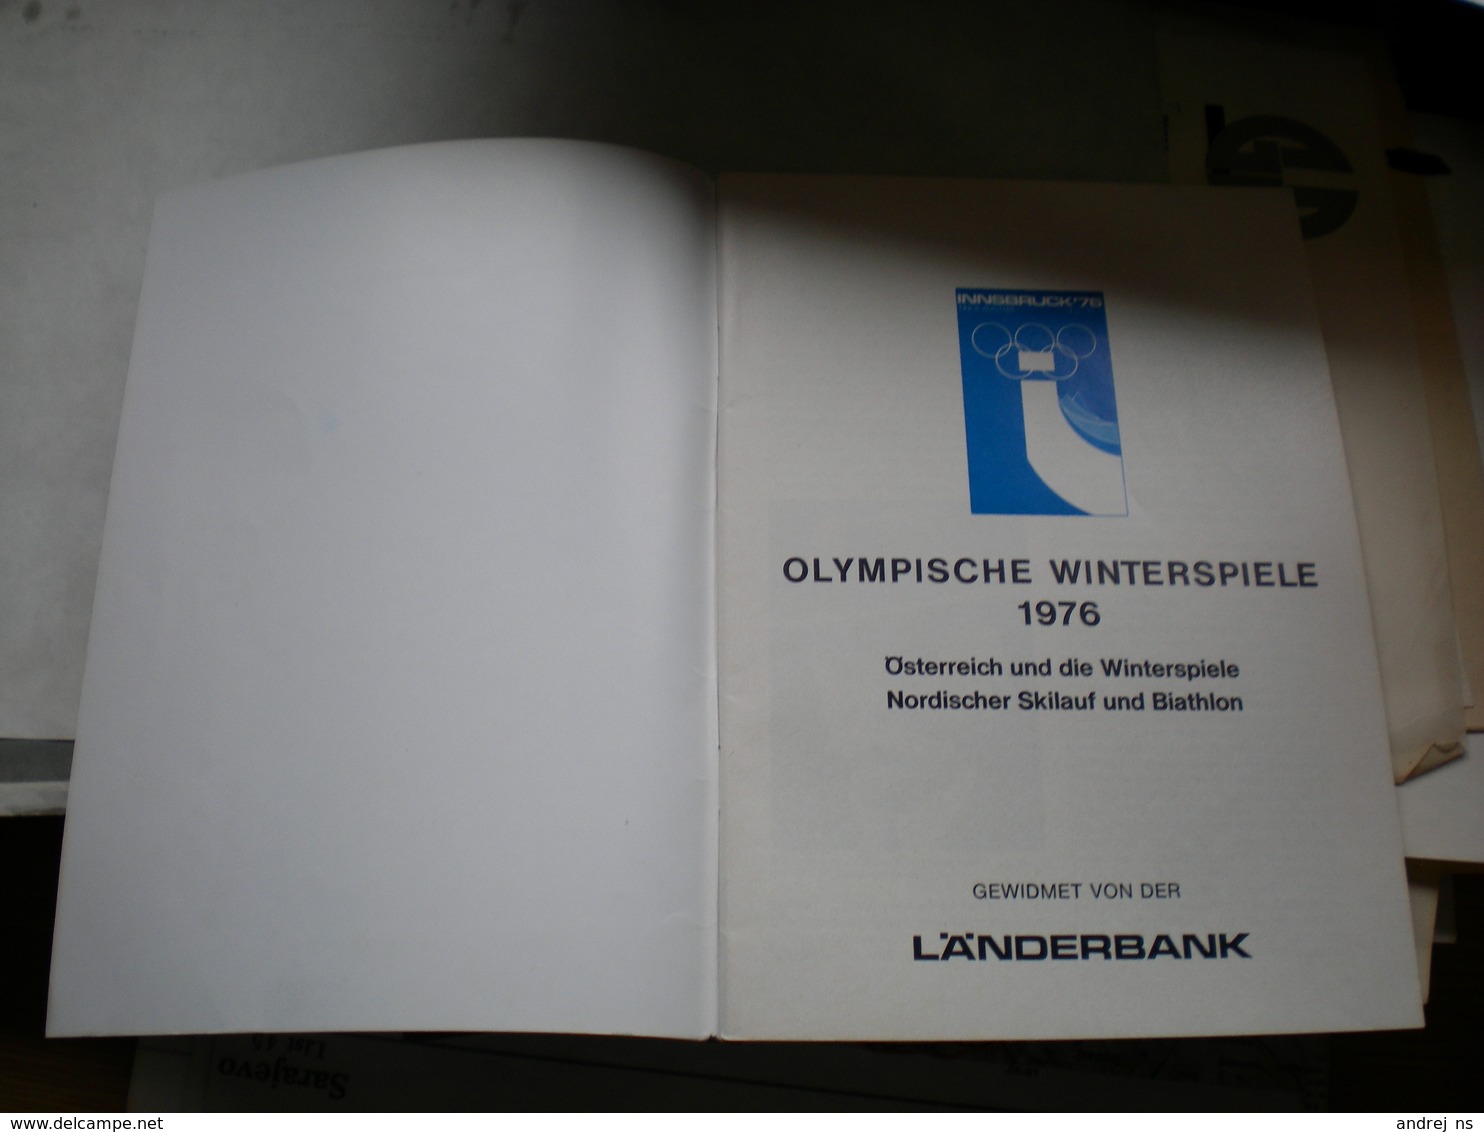 Olympische Winterspiele 1976 Osterreich Und Die Winterspiele Nordischer Skilauf Und Biathlon - Books